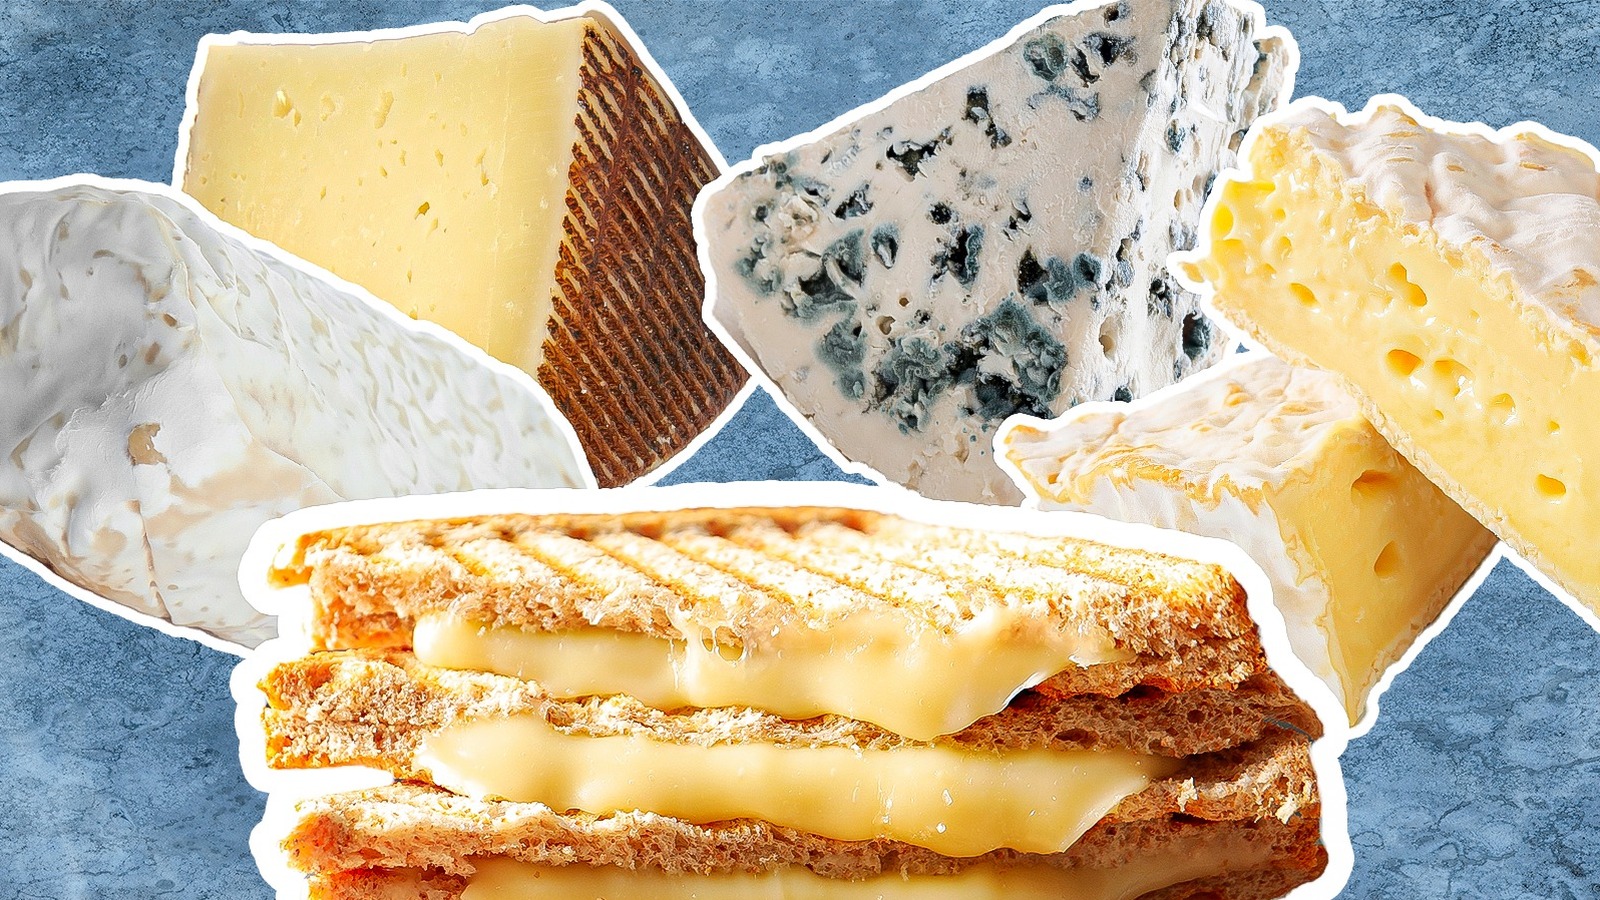 Butterkäse: Wisconsin's Little-Known “Butter Cheese”